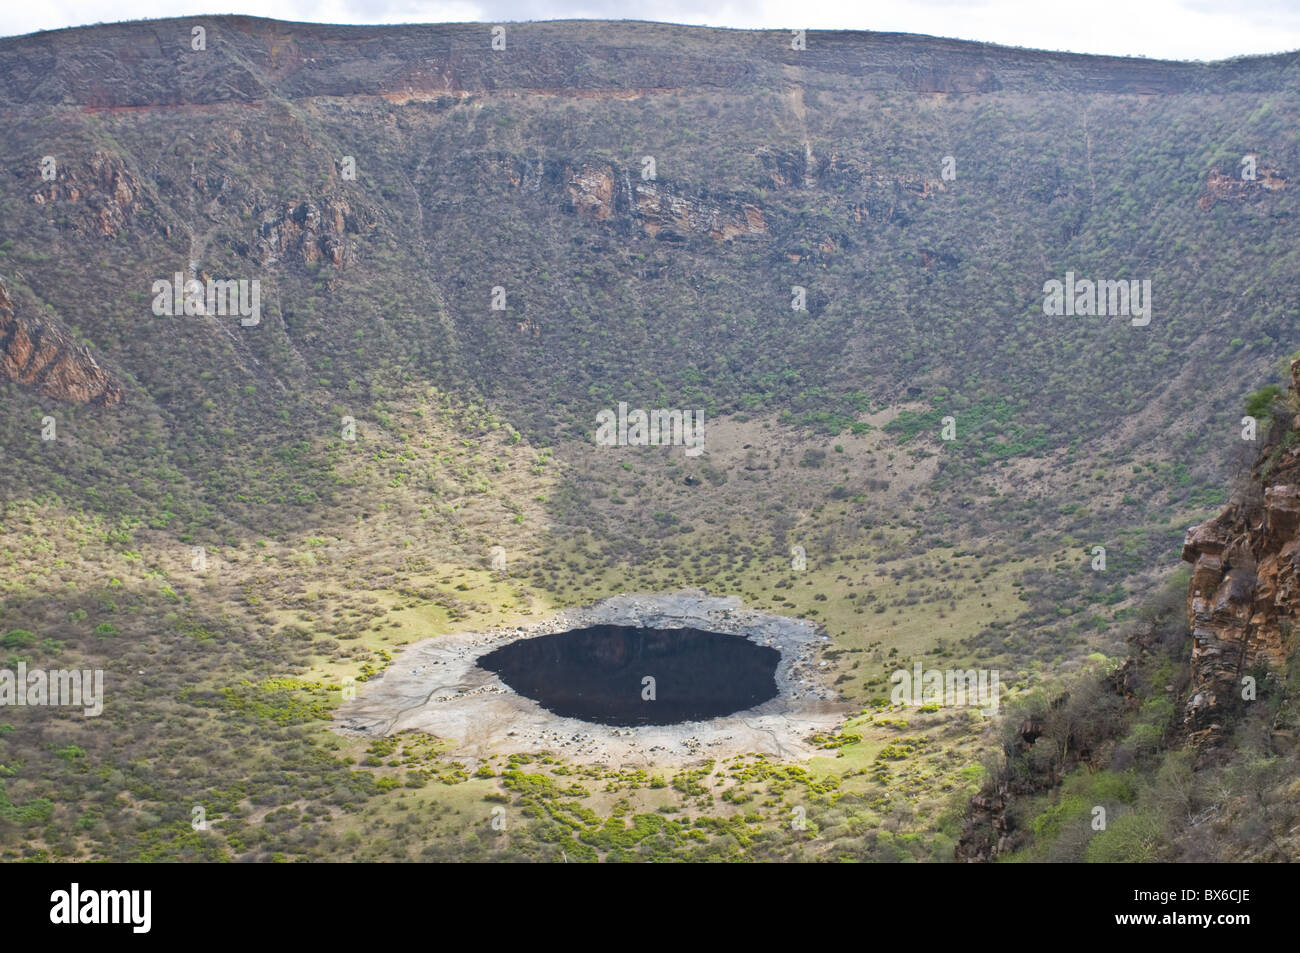 El Sod Crater Lake, au sud de l'Éthiopie, l'Afrique Banque D'Images